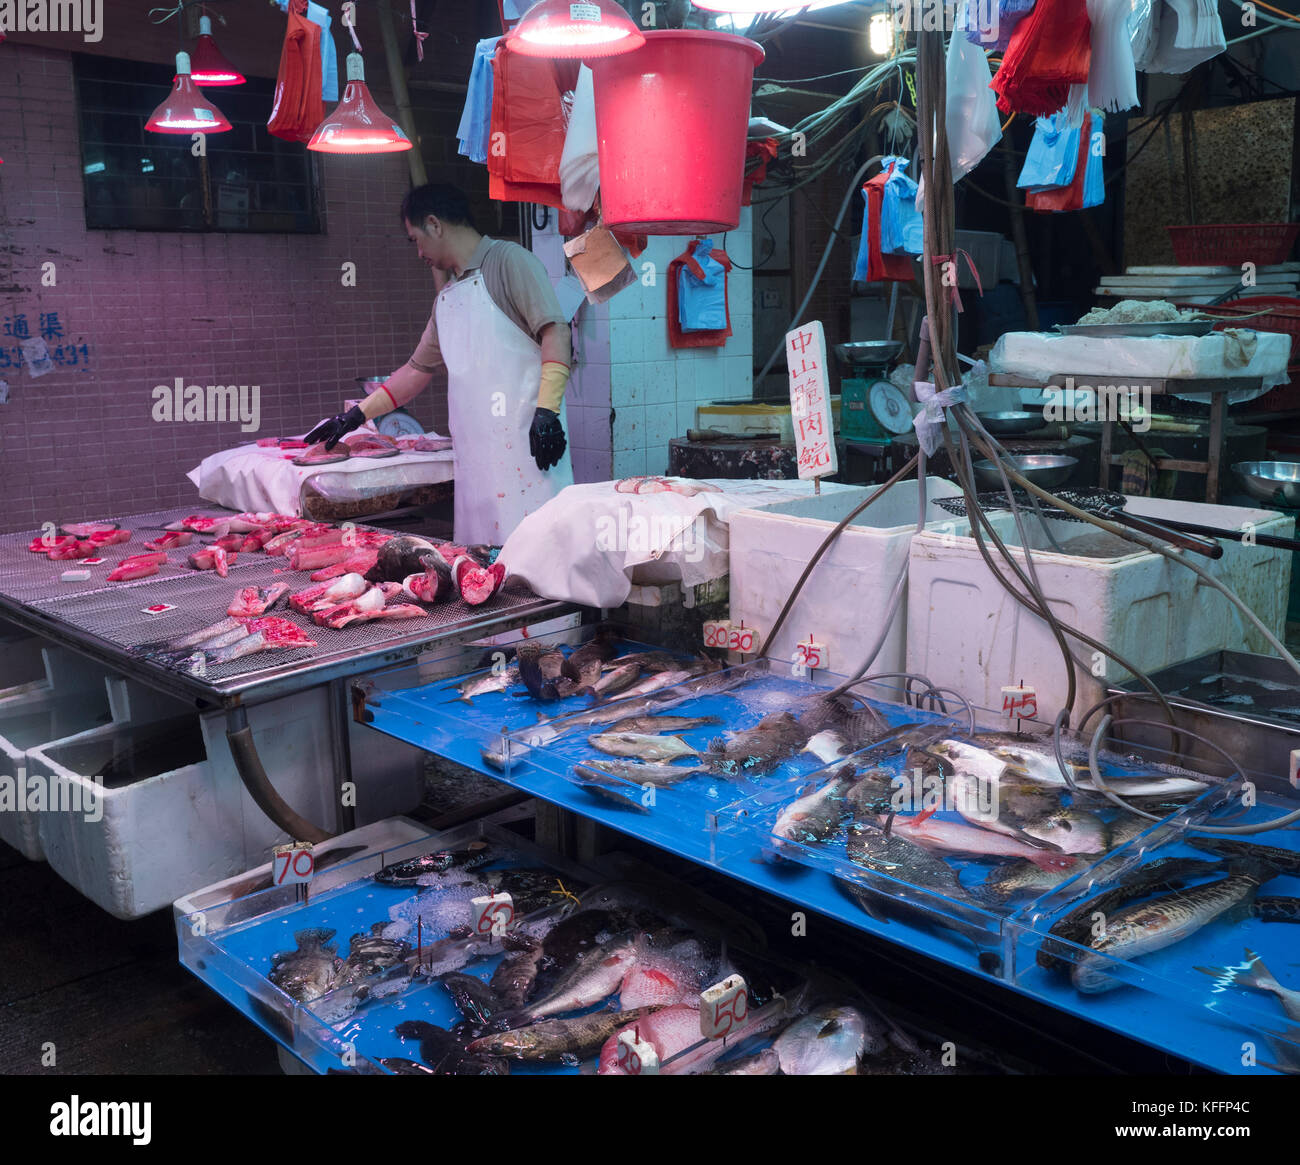 Les vendeurs du marché au marché intérieur Tei Yau marché alimentaire, à Hong Kong, Chine, Asie. Banque D'Images